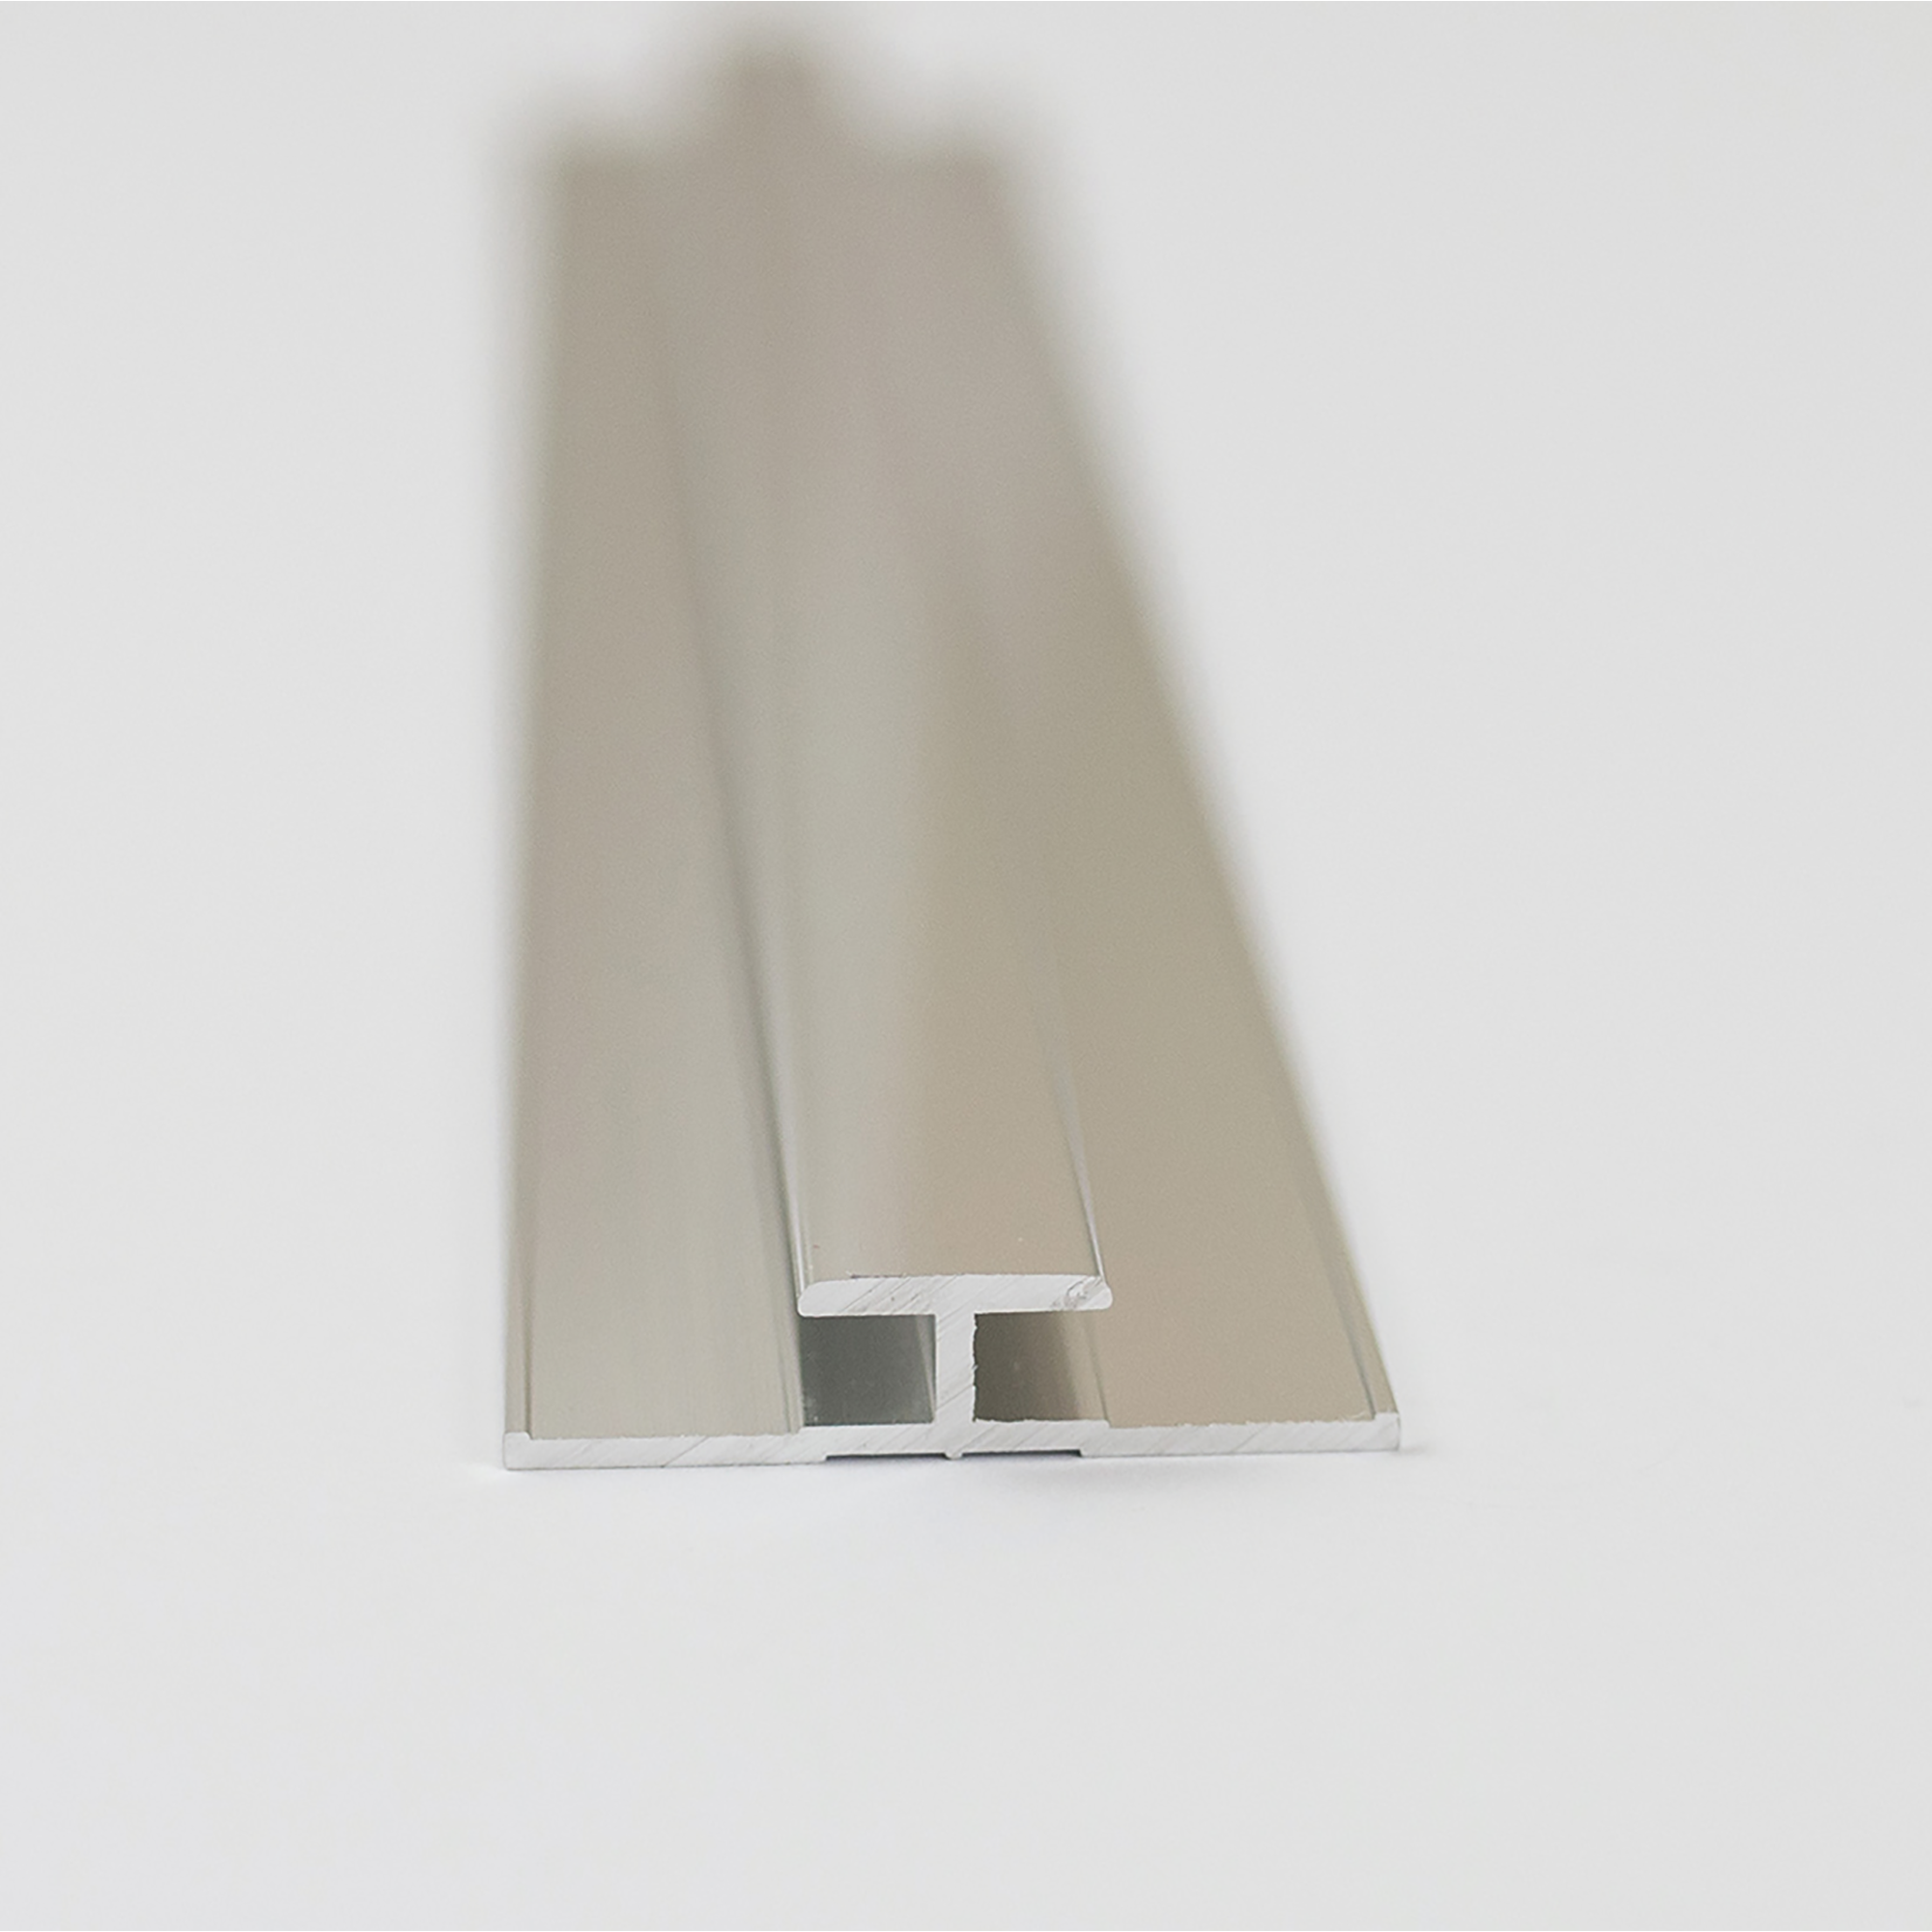 Verbindungsprofil für Rückwandplatten, alu chromeffekt, 2550 mm + product picture